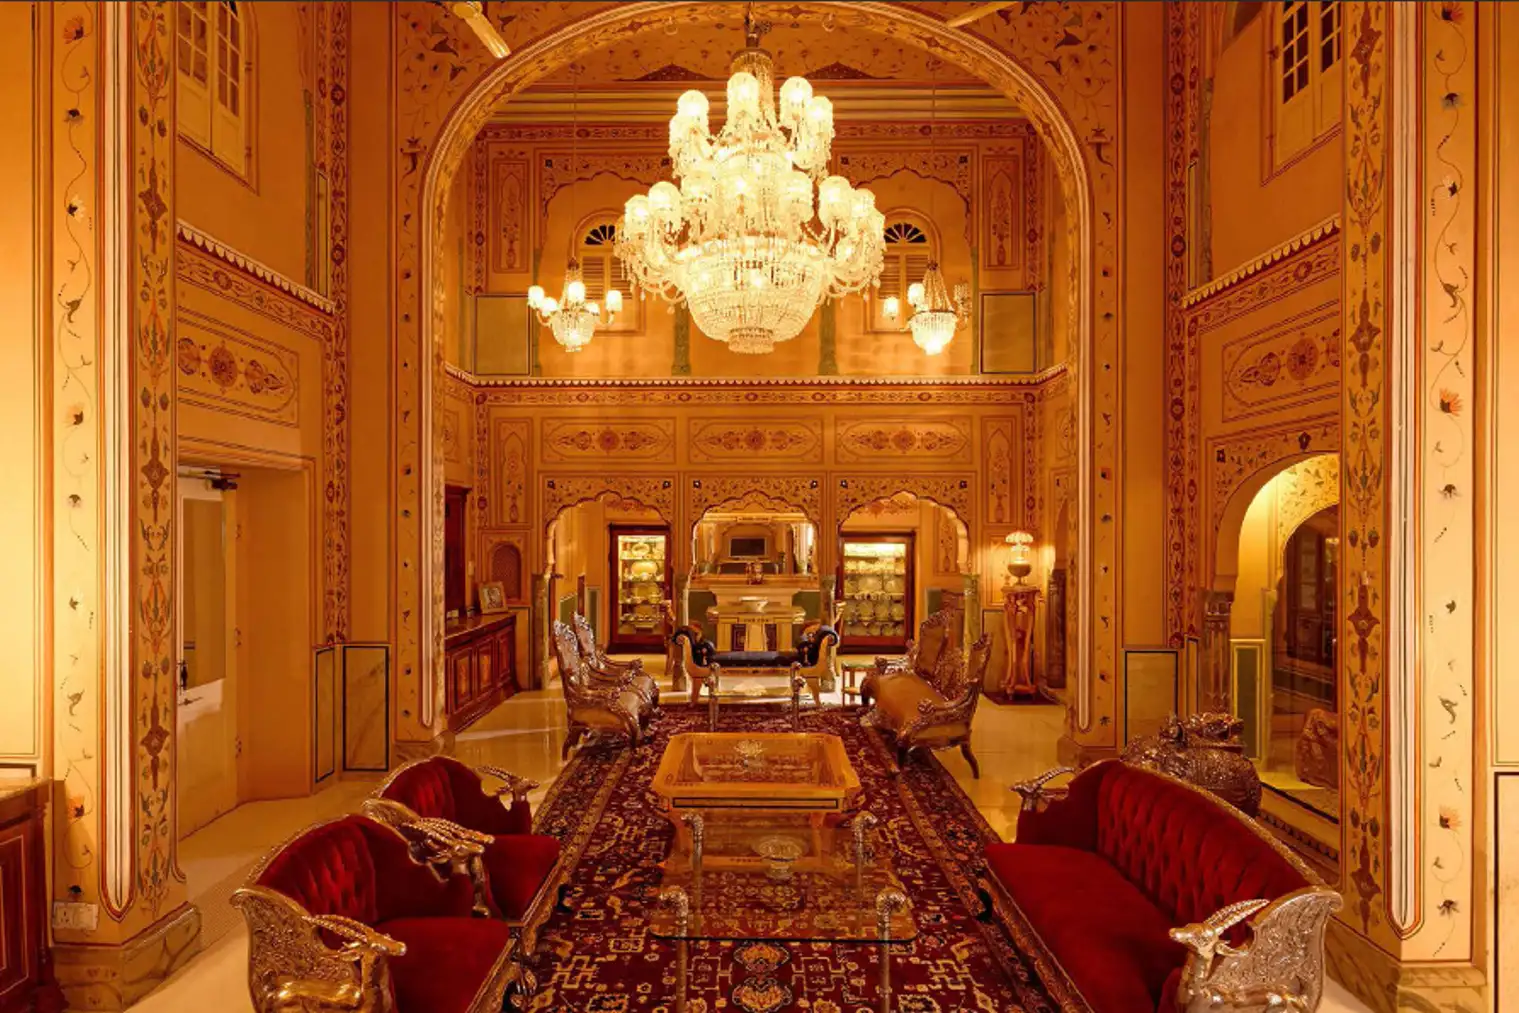 171102-lavish-hotel-rooms-maharajah-pavilion-raj-palace-jaipur-india